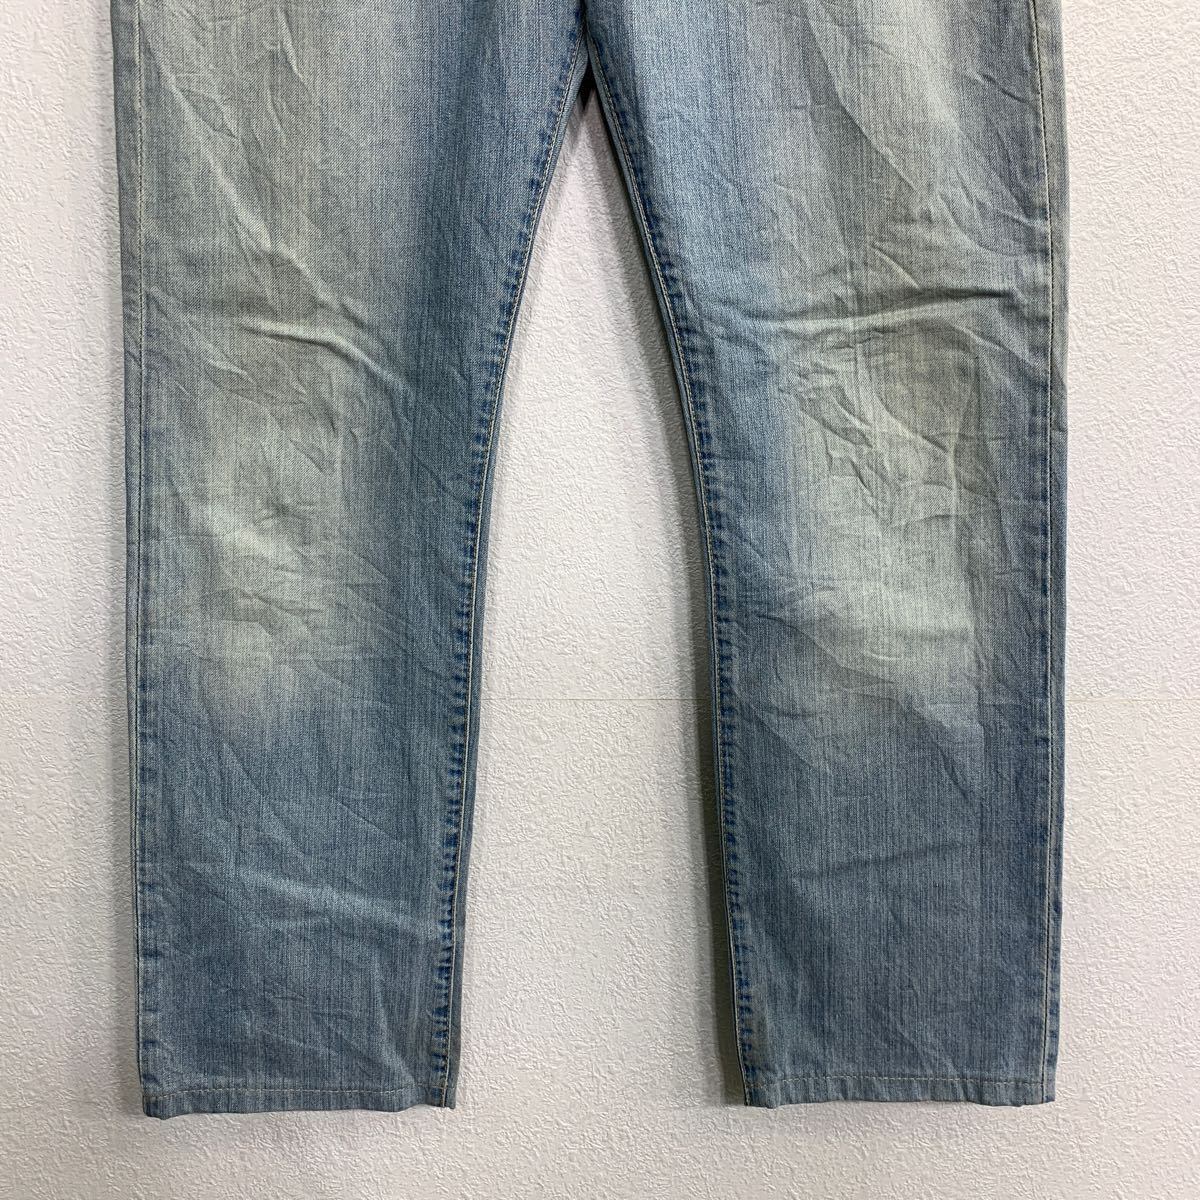 Calvin Klein Jeans デニムパンツ W30 カルバンクラインジーンズ